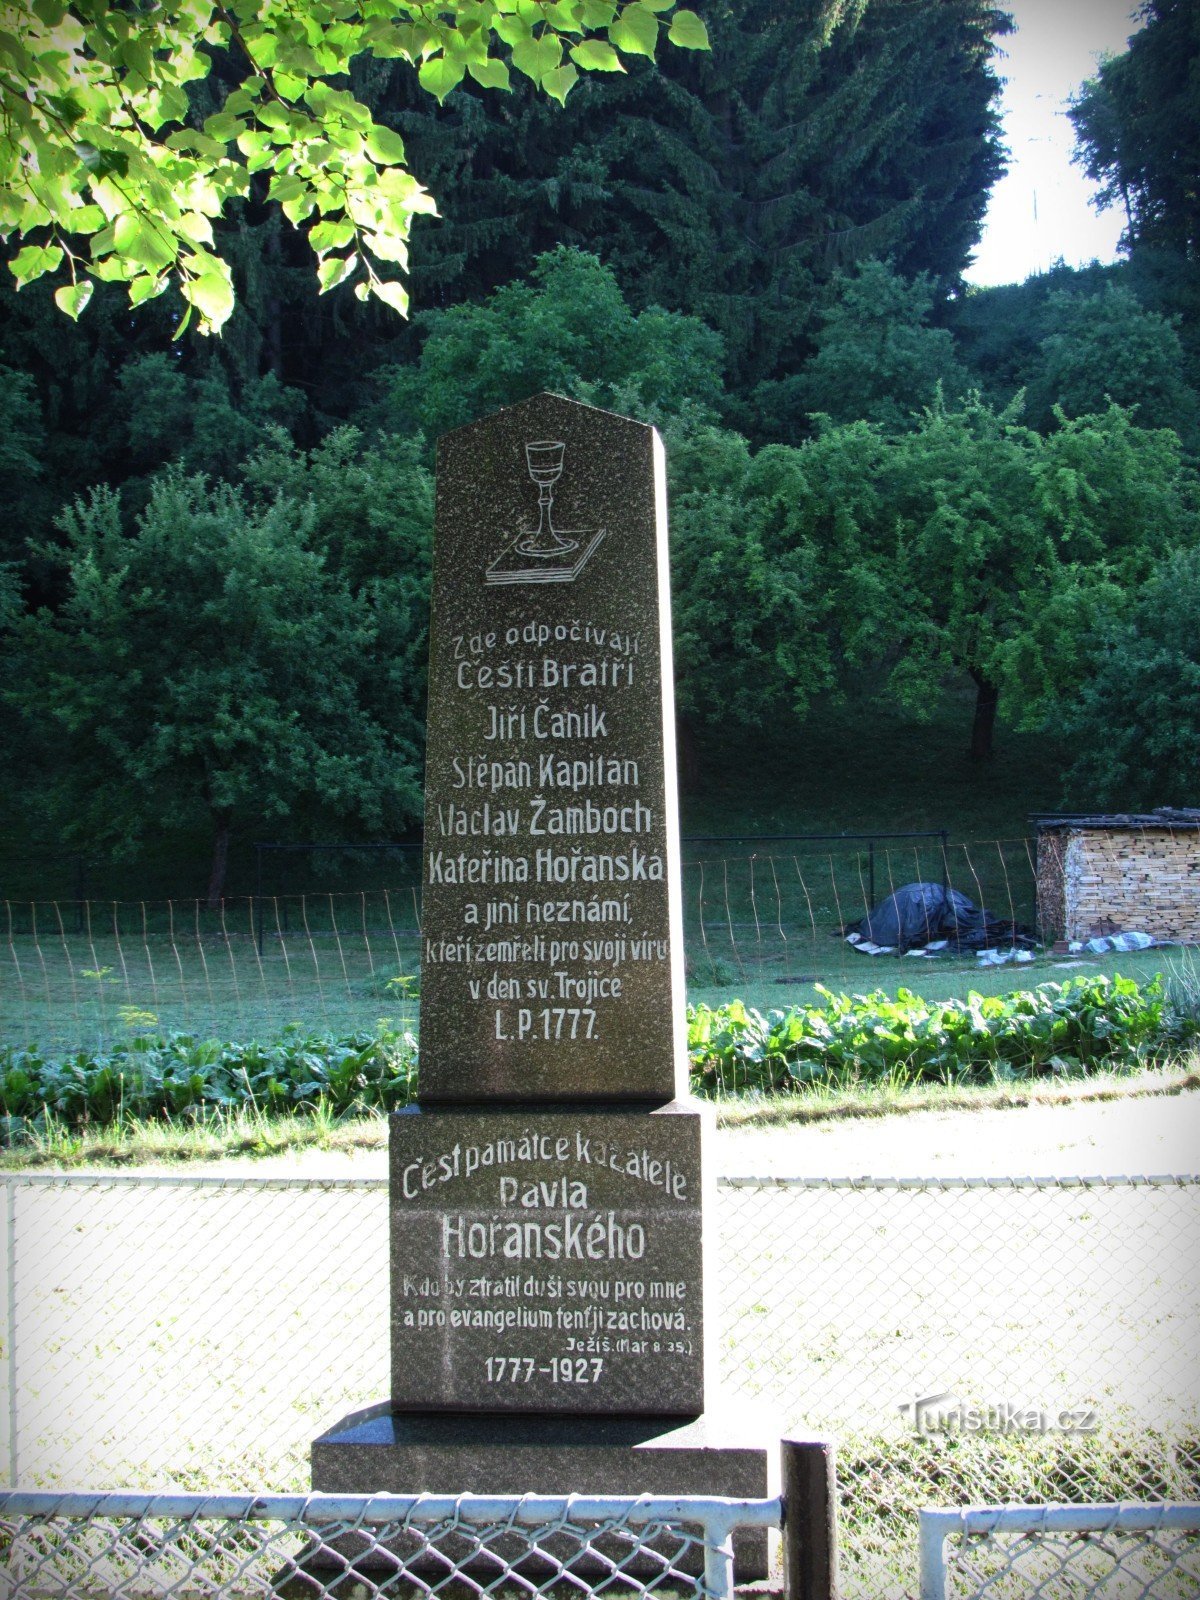 Růžďka - đài tưởng niệm các nạn nhân